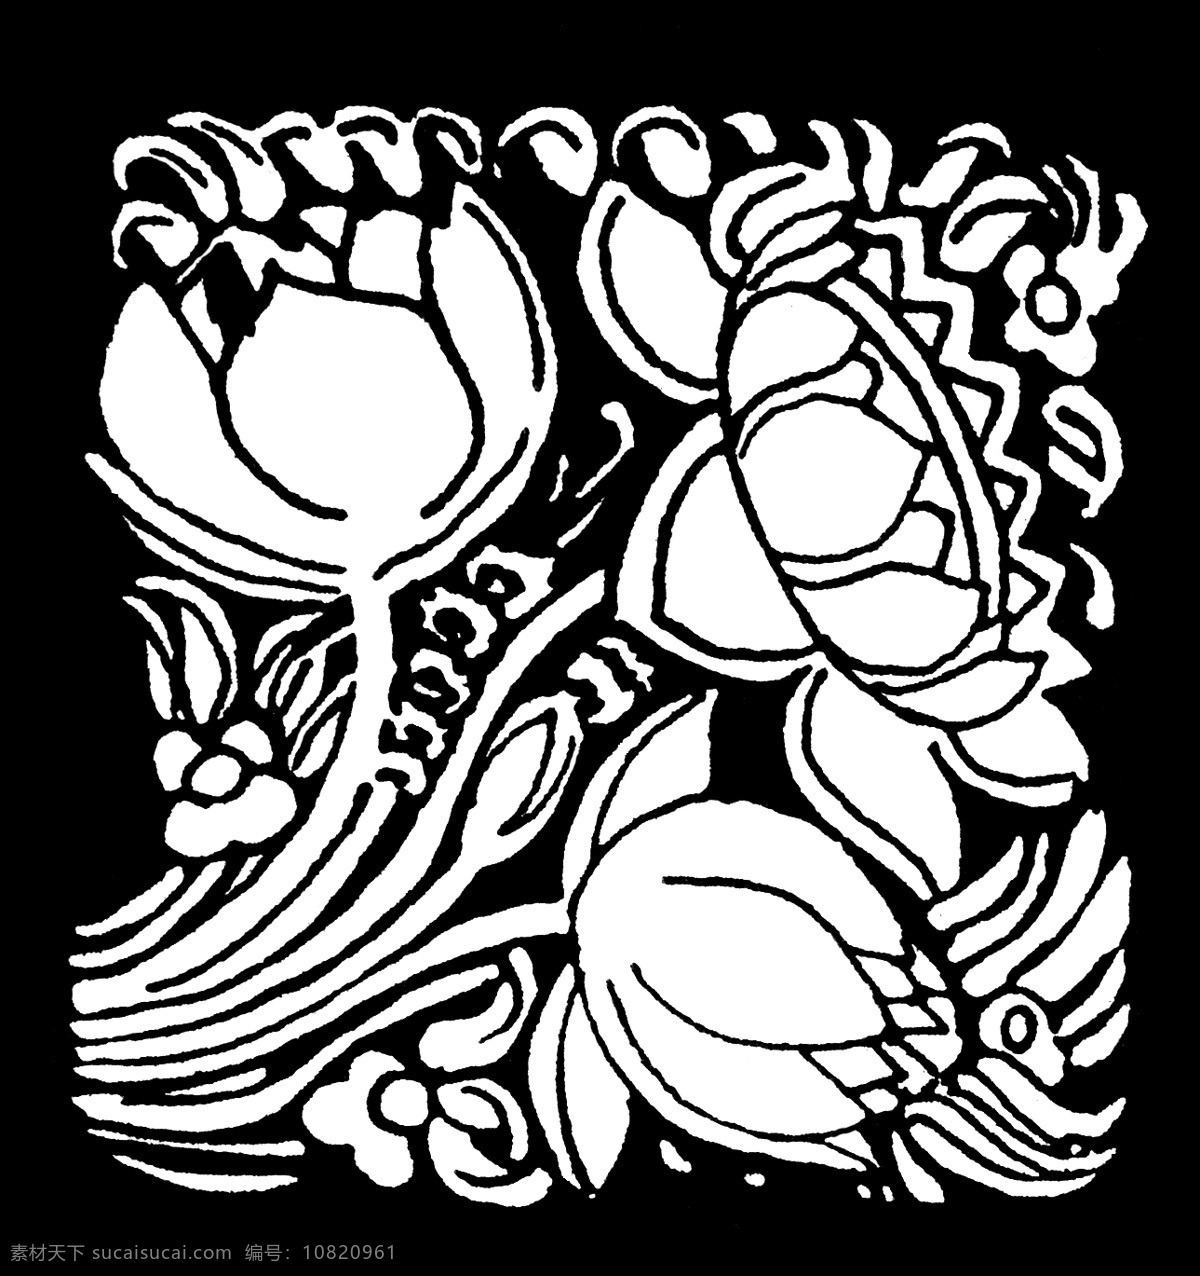 黑白花纹背景 黑白 图案 植物 手绘 复古 黑白图案 背景底纹 底纹边框 黑色